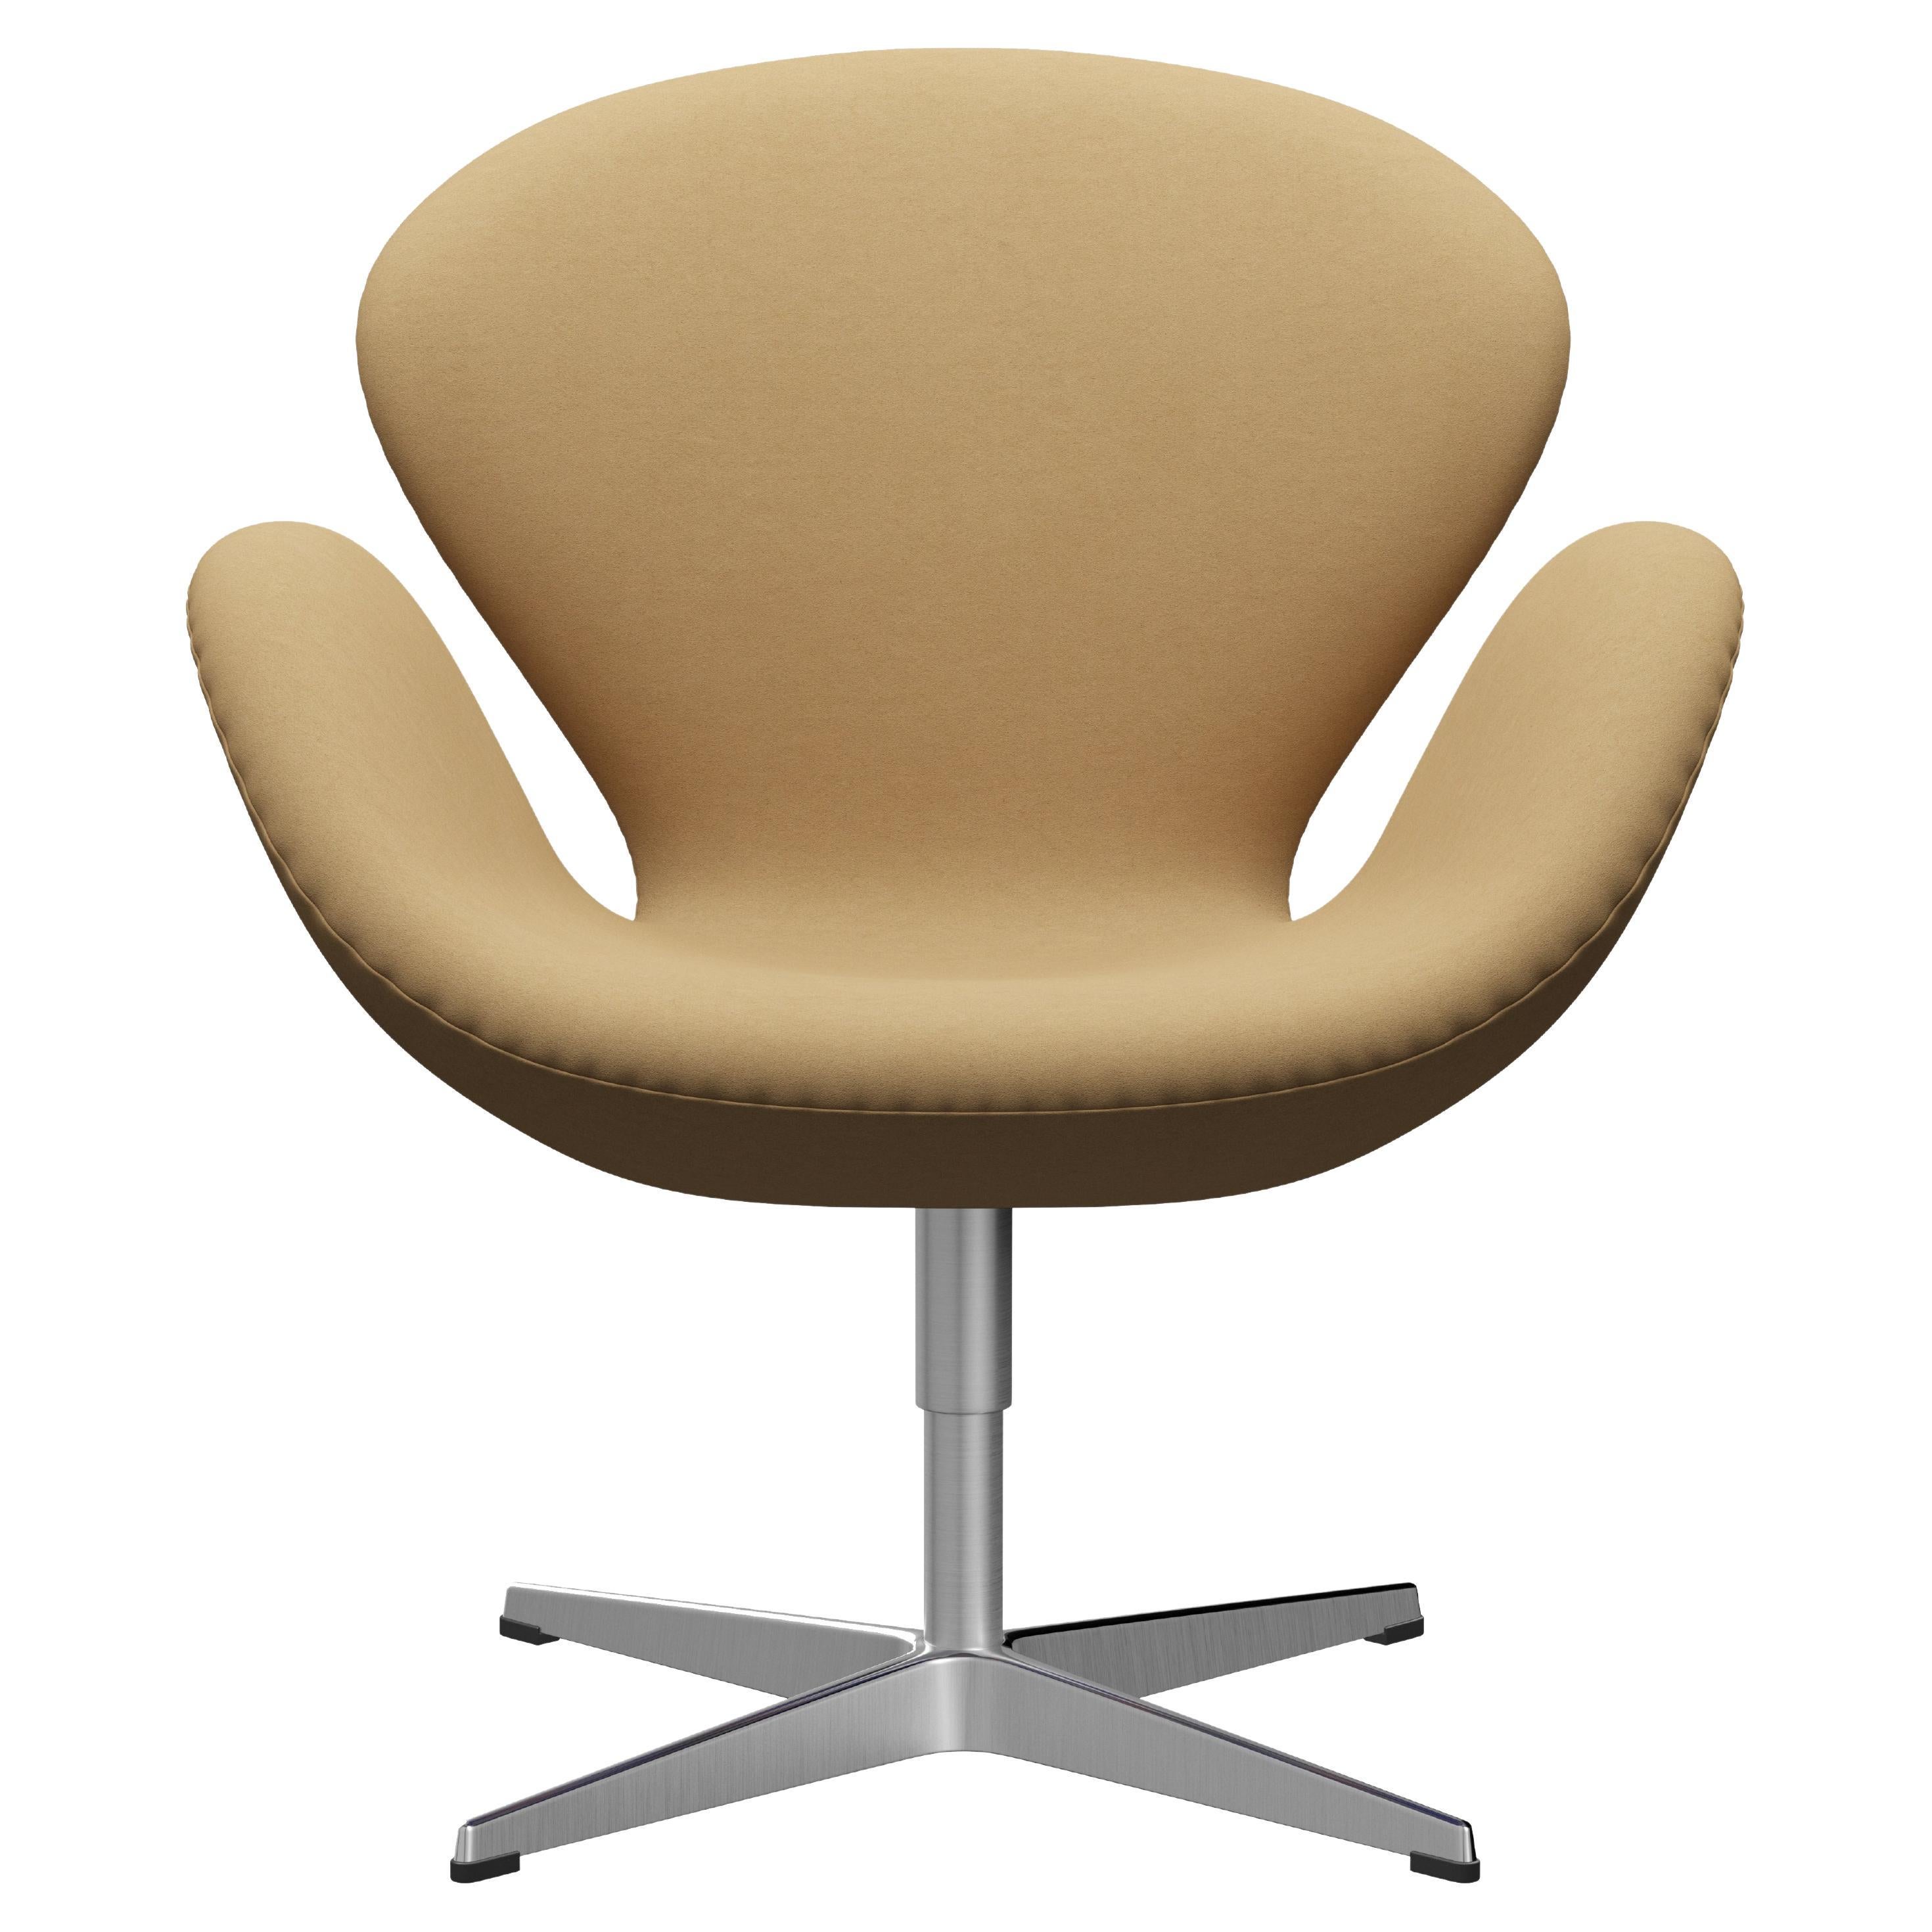 Arne Jacobsen 'Swan' Chair for Fritz Hansen in Fabric Upholstery (Cat. 3) For Sale